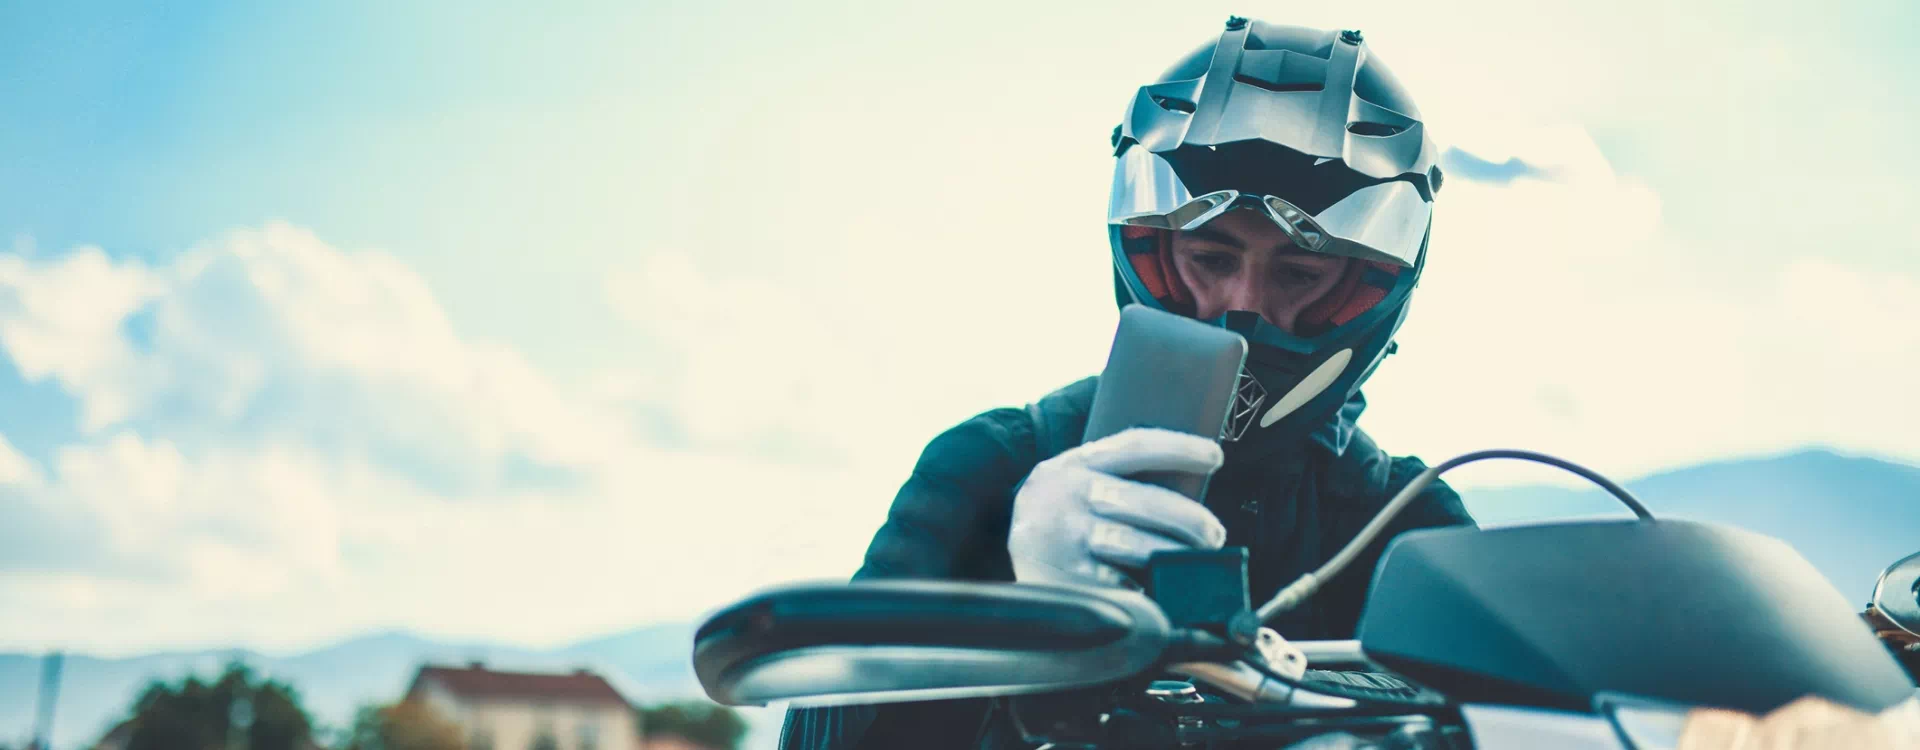 motocyklista korzystający z telefonu